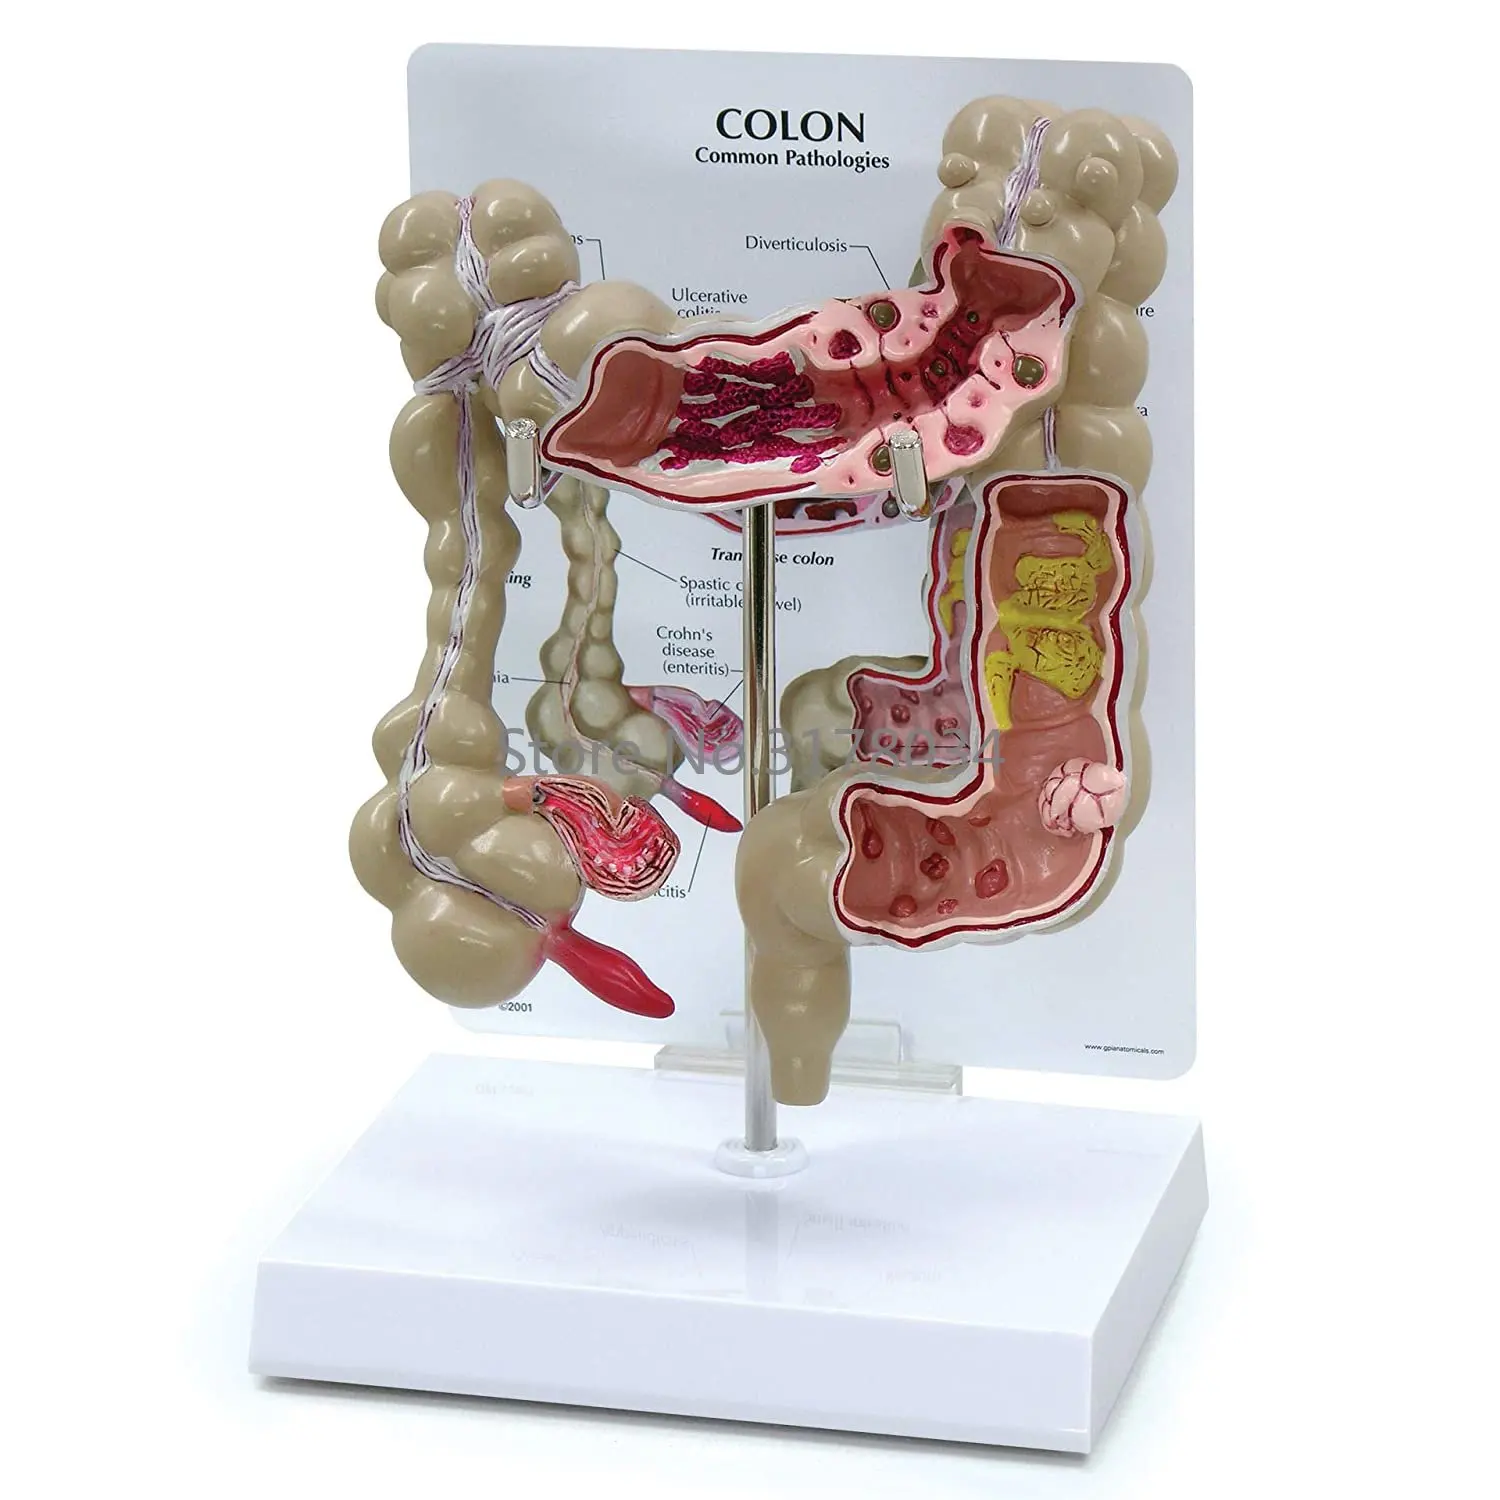 Анатомия человеческого тела, точная копия толстой кишки с общими патологиями для врачей, офисный обучающий инструмент